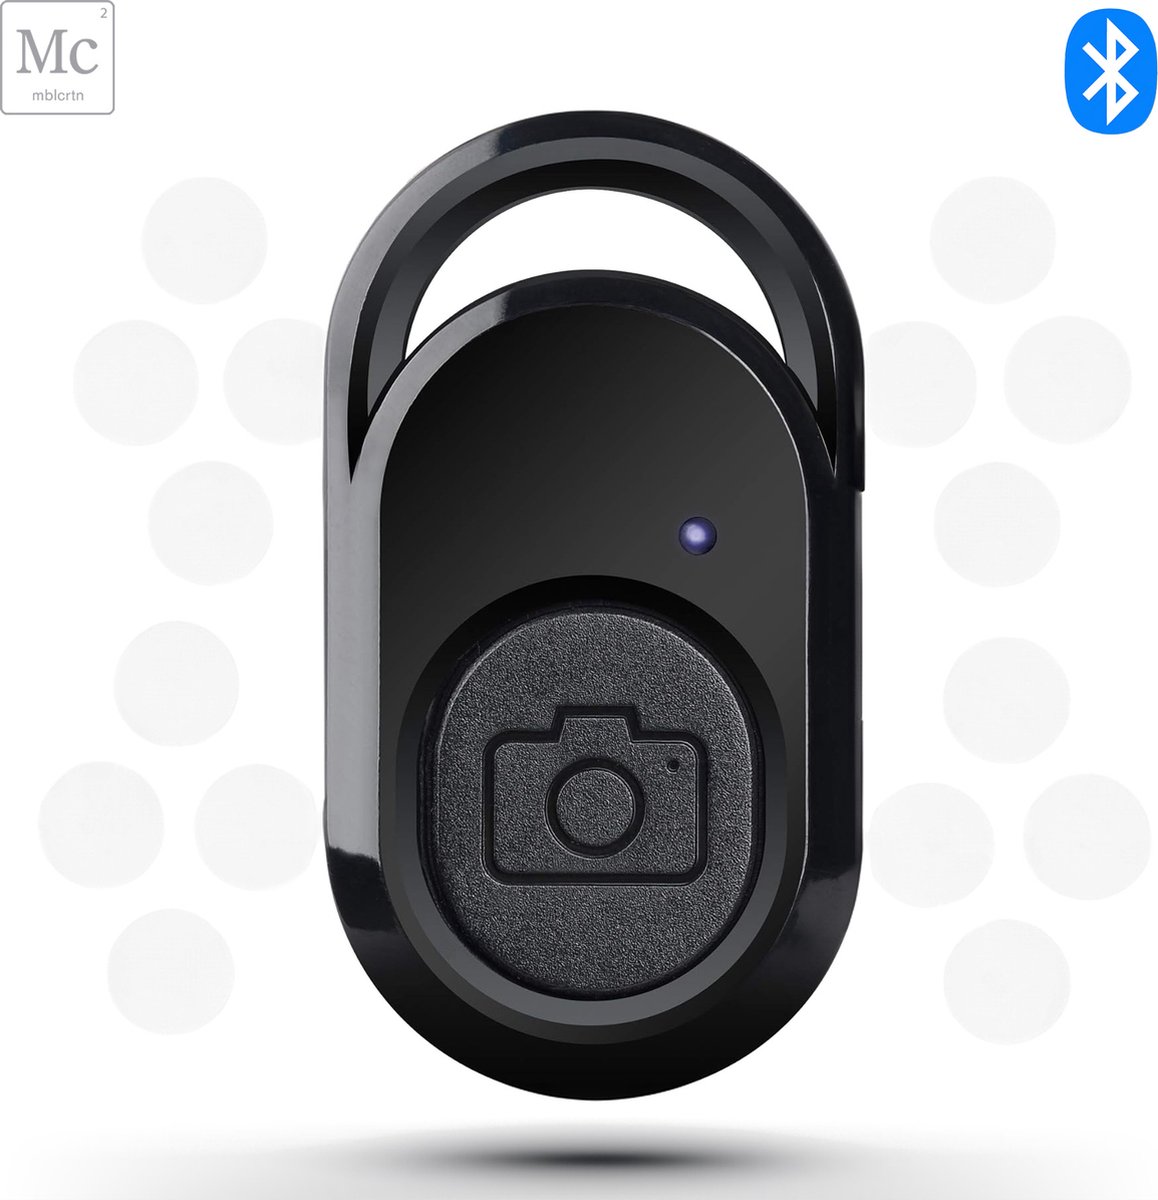 Bluetooth Afstandsbediening - Selfie-knop - Foto-neem-knop - Voor Fotografie en Videografie - Geschikt voor iOS en Android - Mobiel en Tablet - Komt in Handig Bewaaretuitje - Inclusief schoonmaakdoekje - Gratis Verzending in NL - MobileCreation